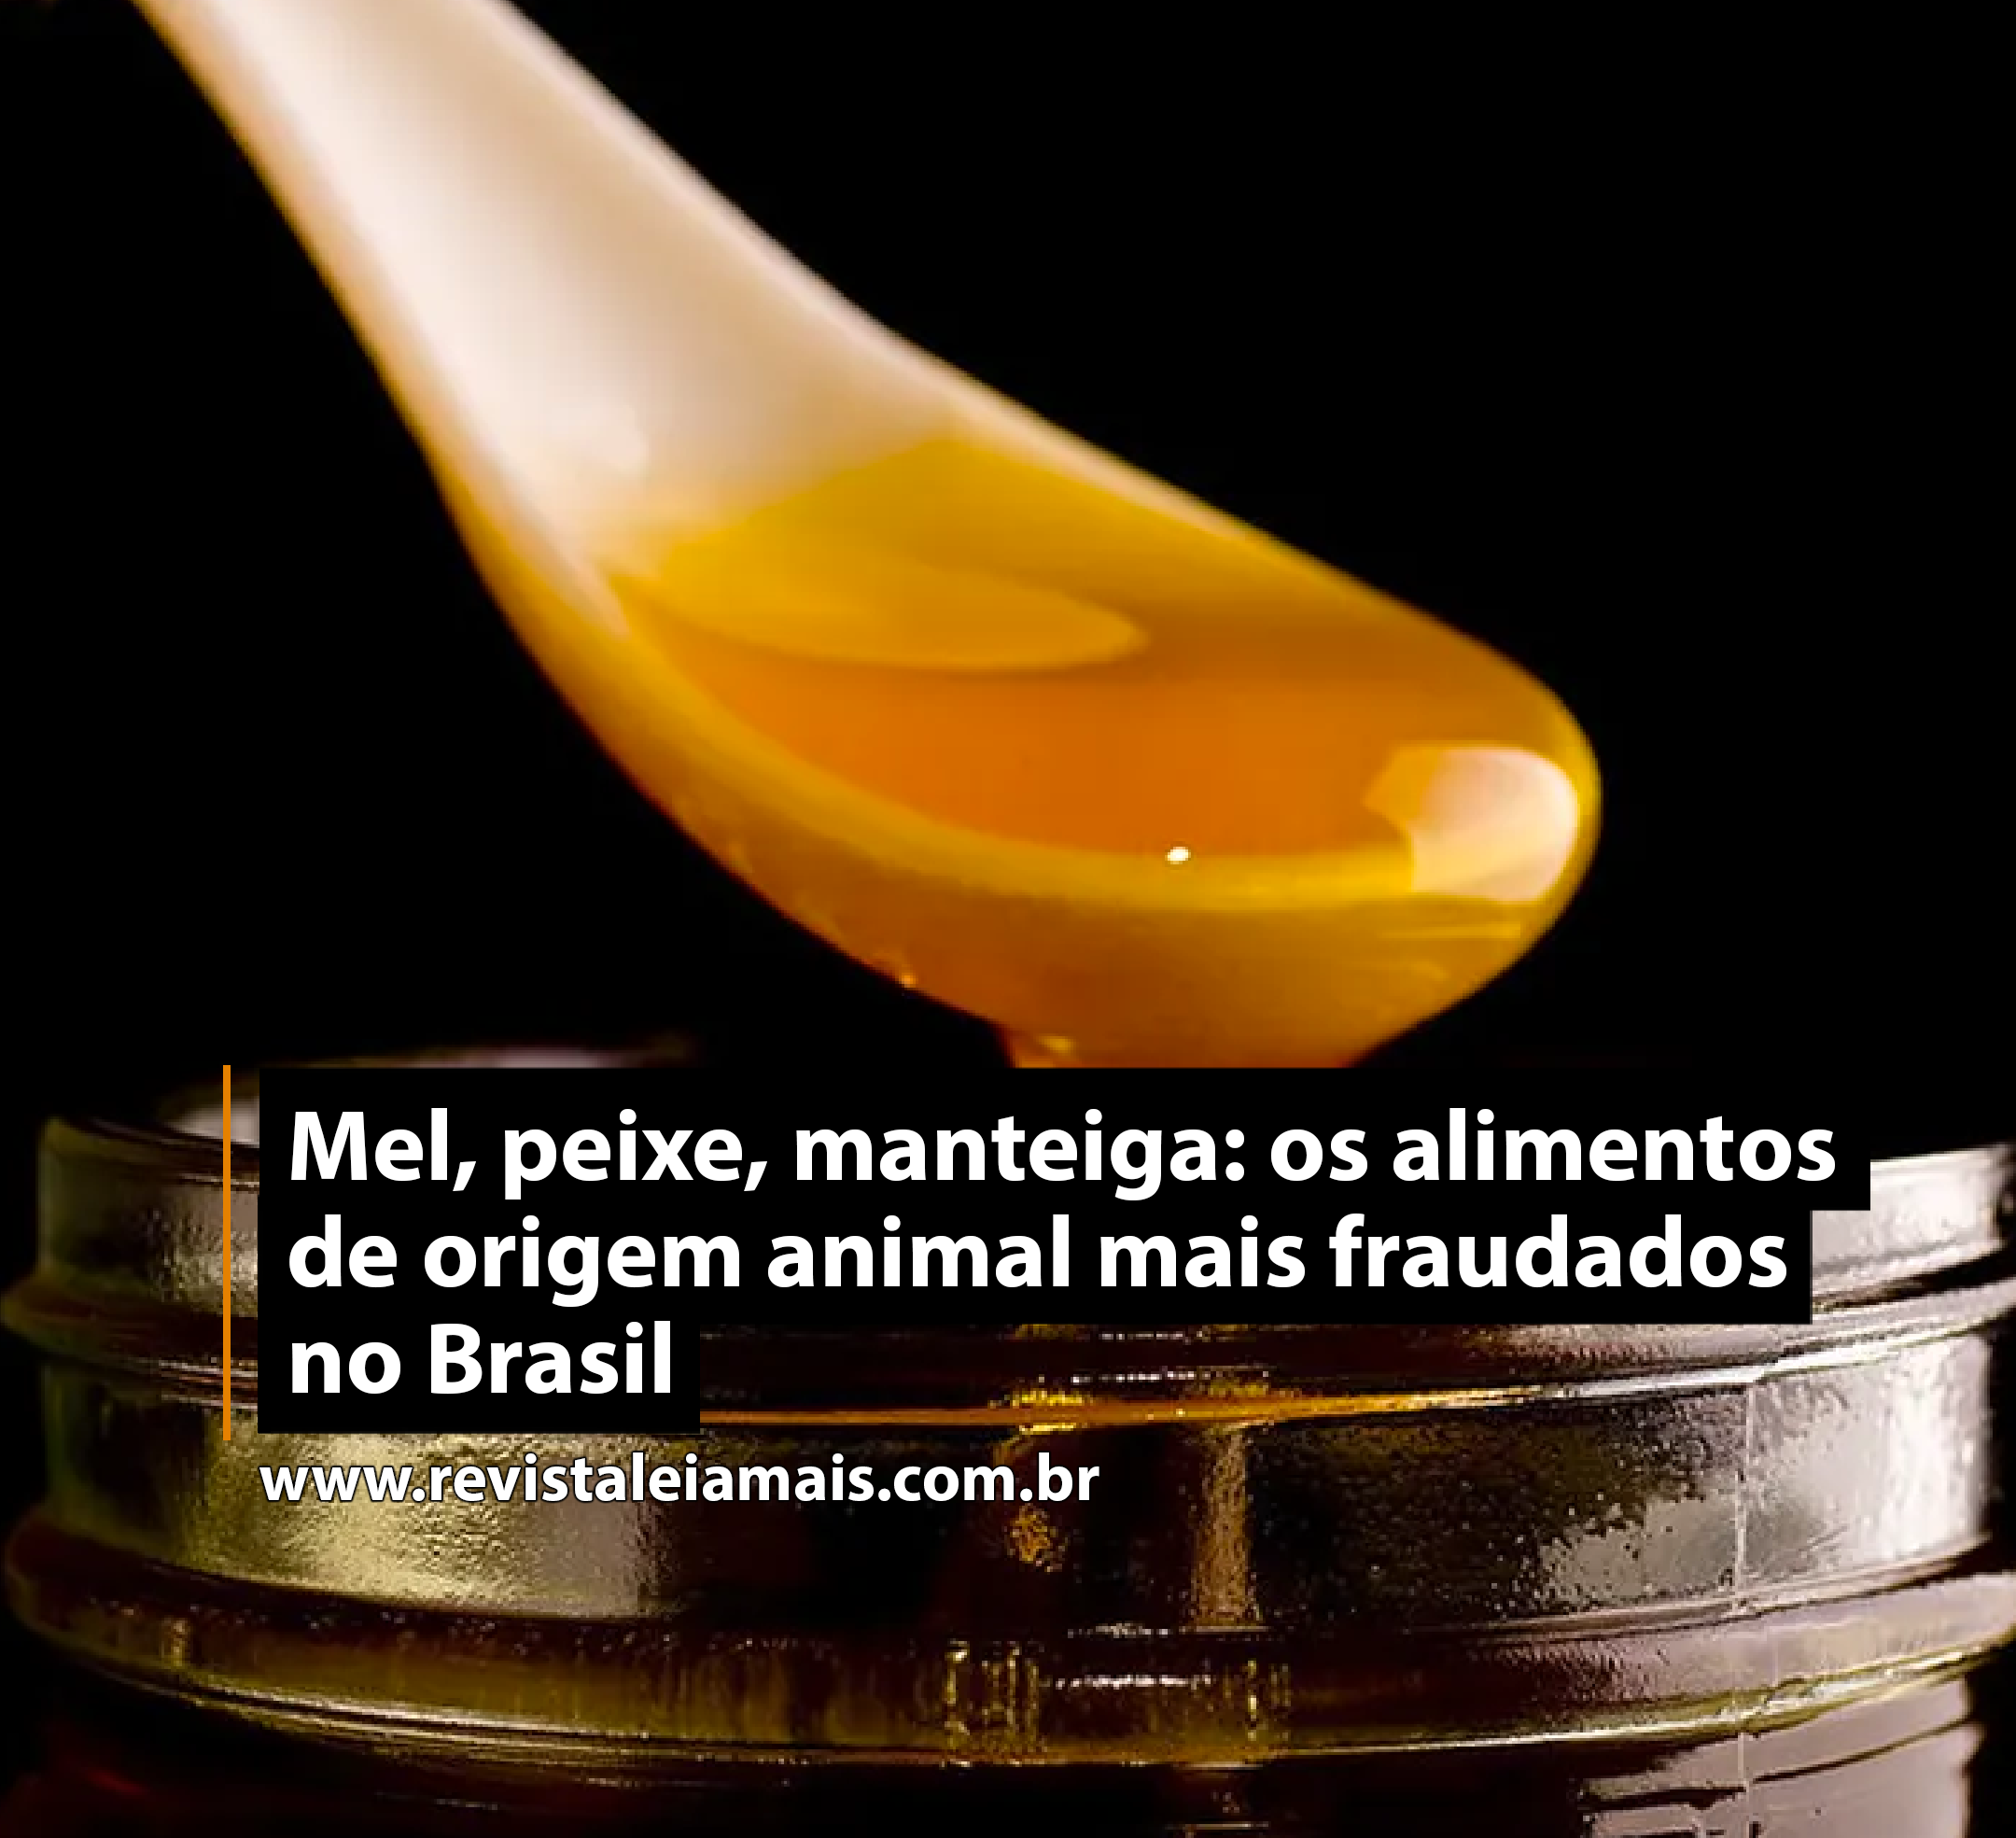 Mel, peixe, manteiga: os alimentos de origem animal mais fraudados no Brasil